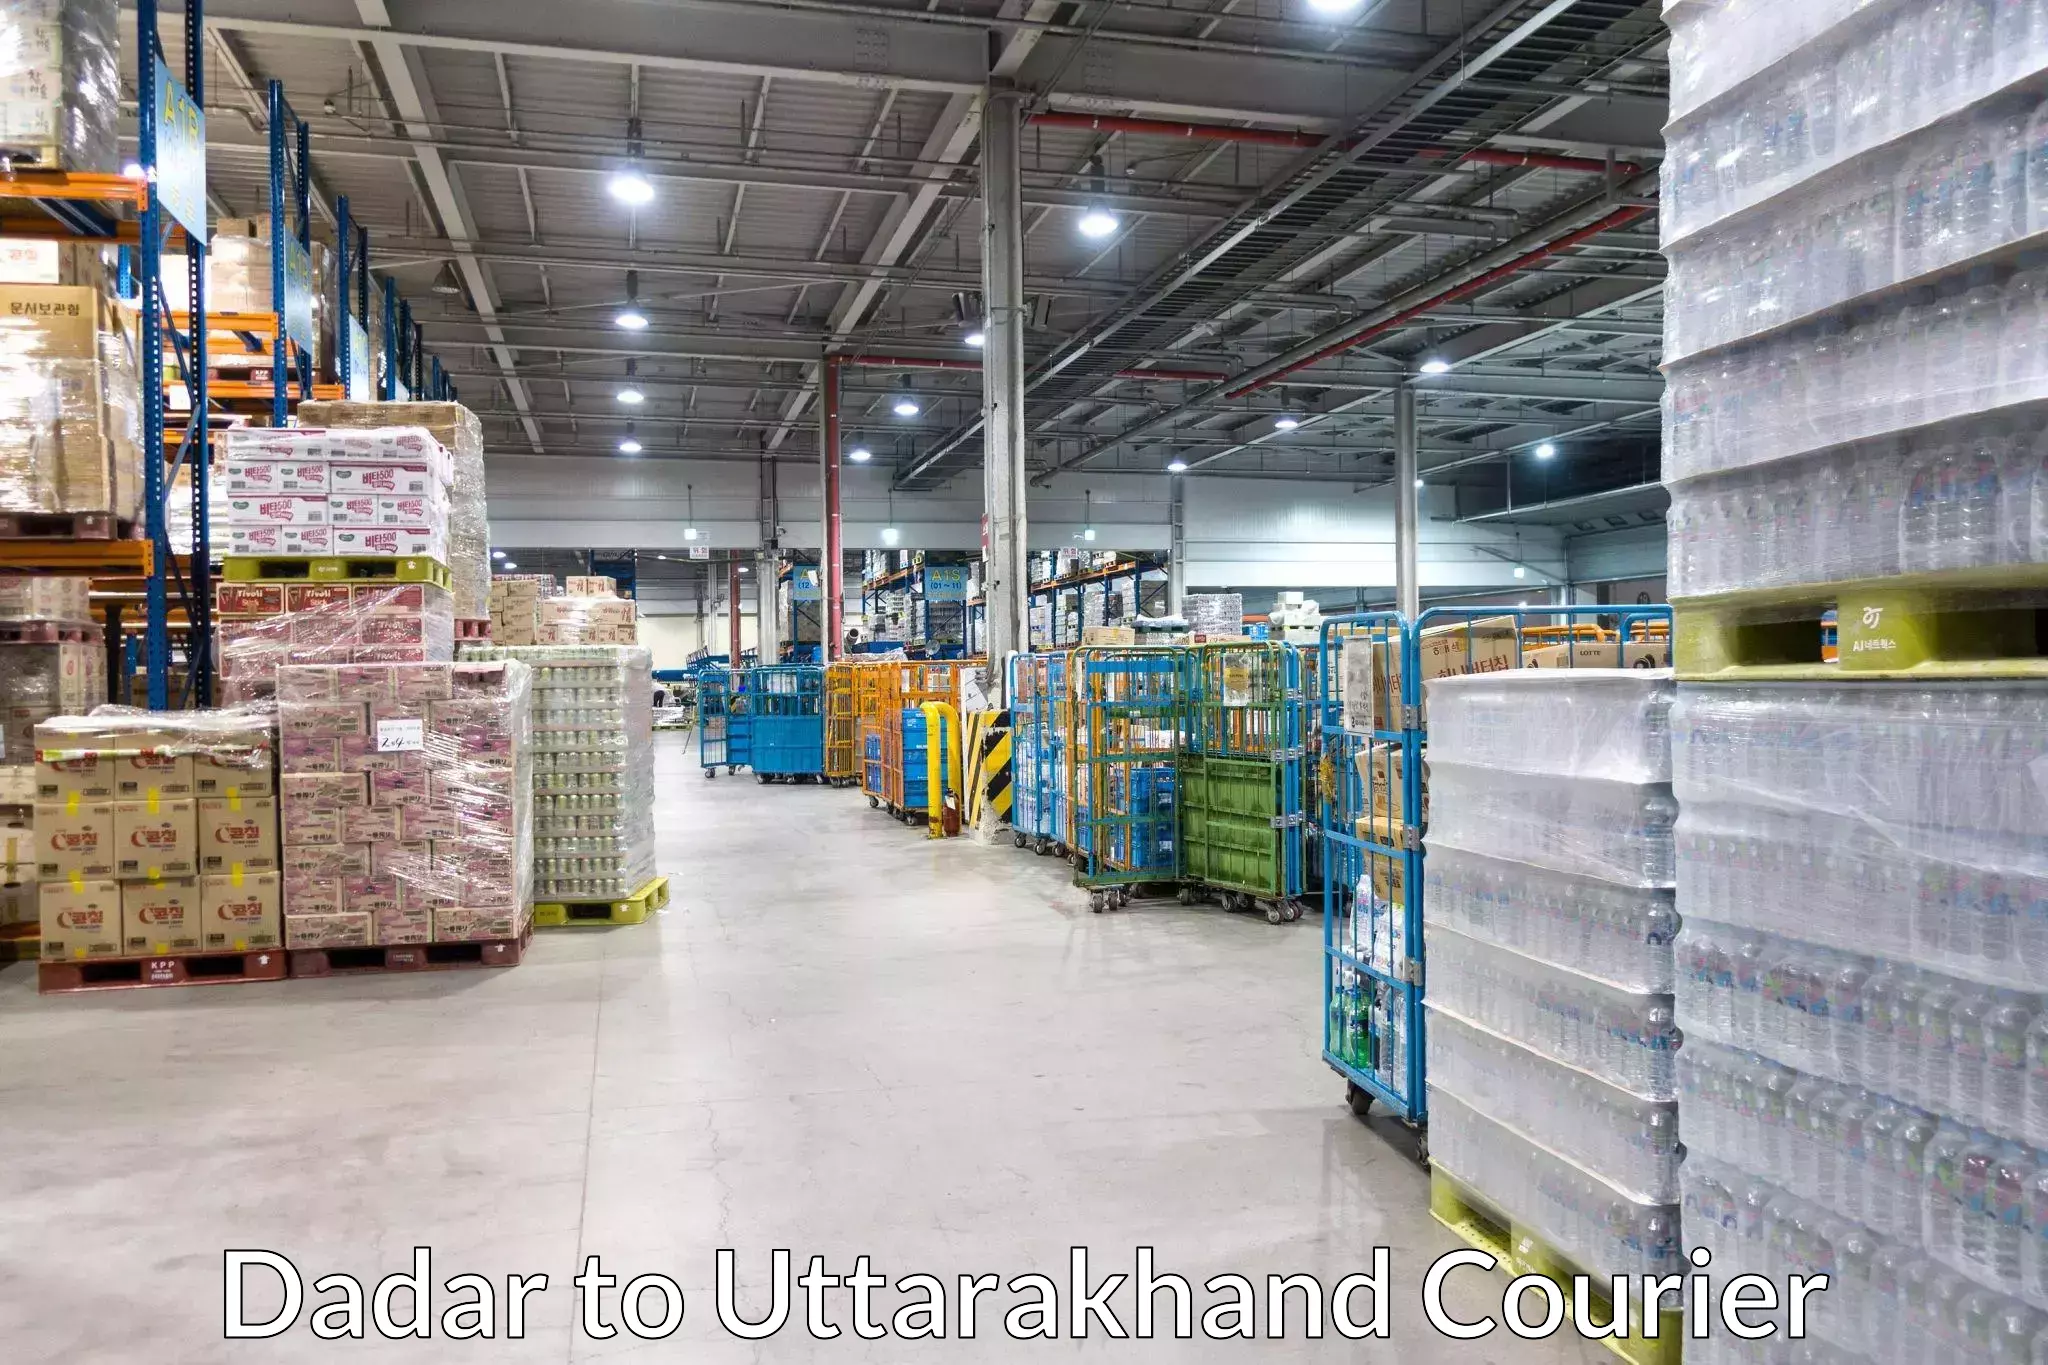 Cargo courier service Dadar to Uttarakhand